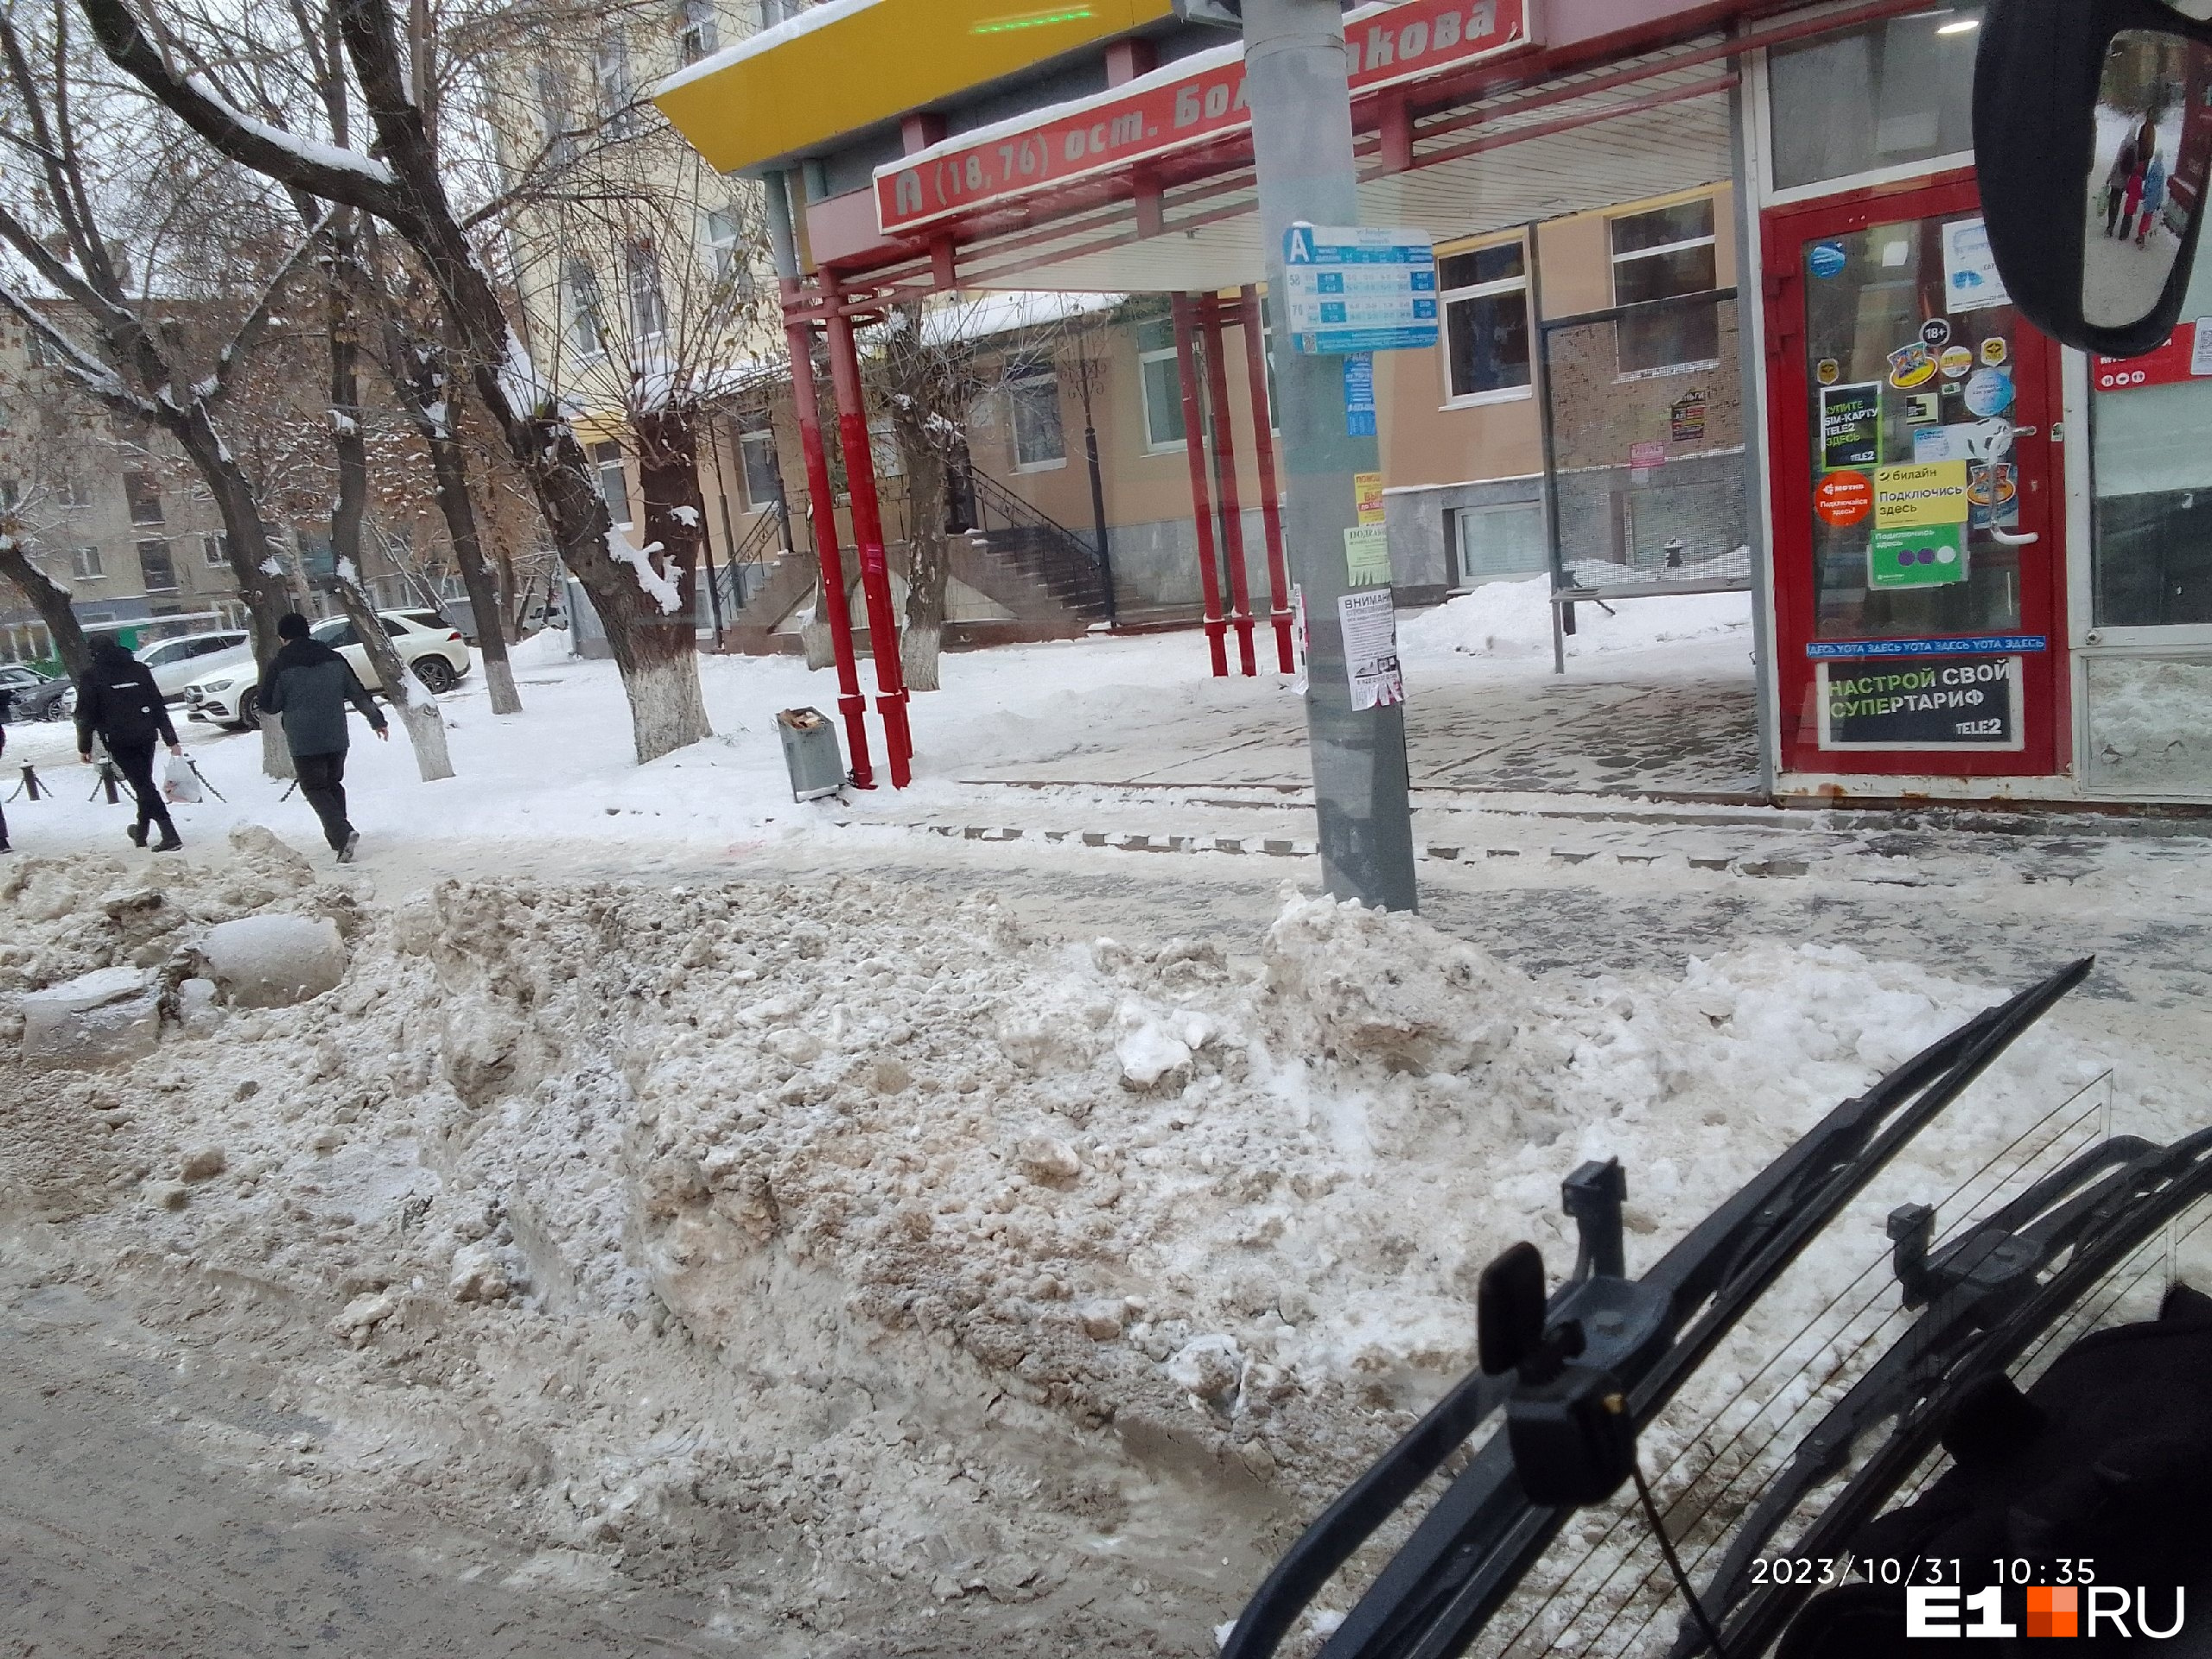 «Люди лезут по горам снега». Екатеринбургский водитель автобуса показал заваленные остановки